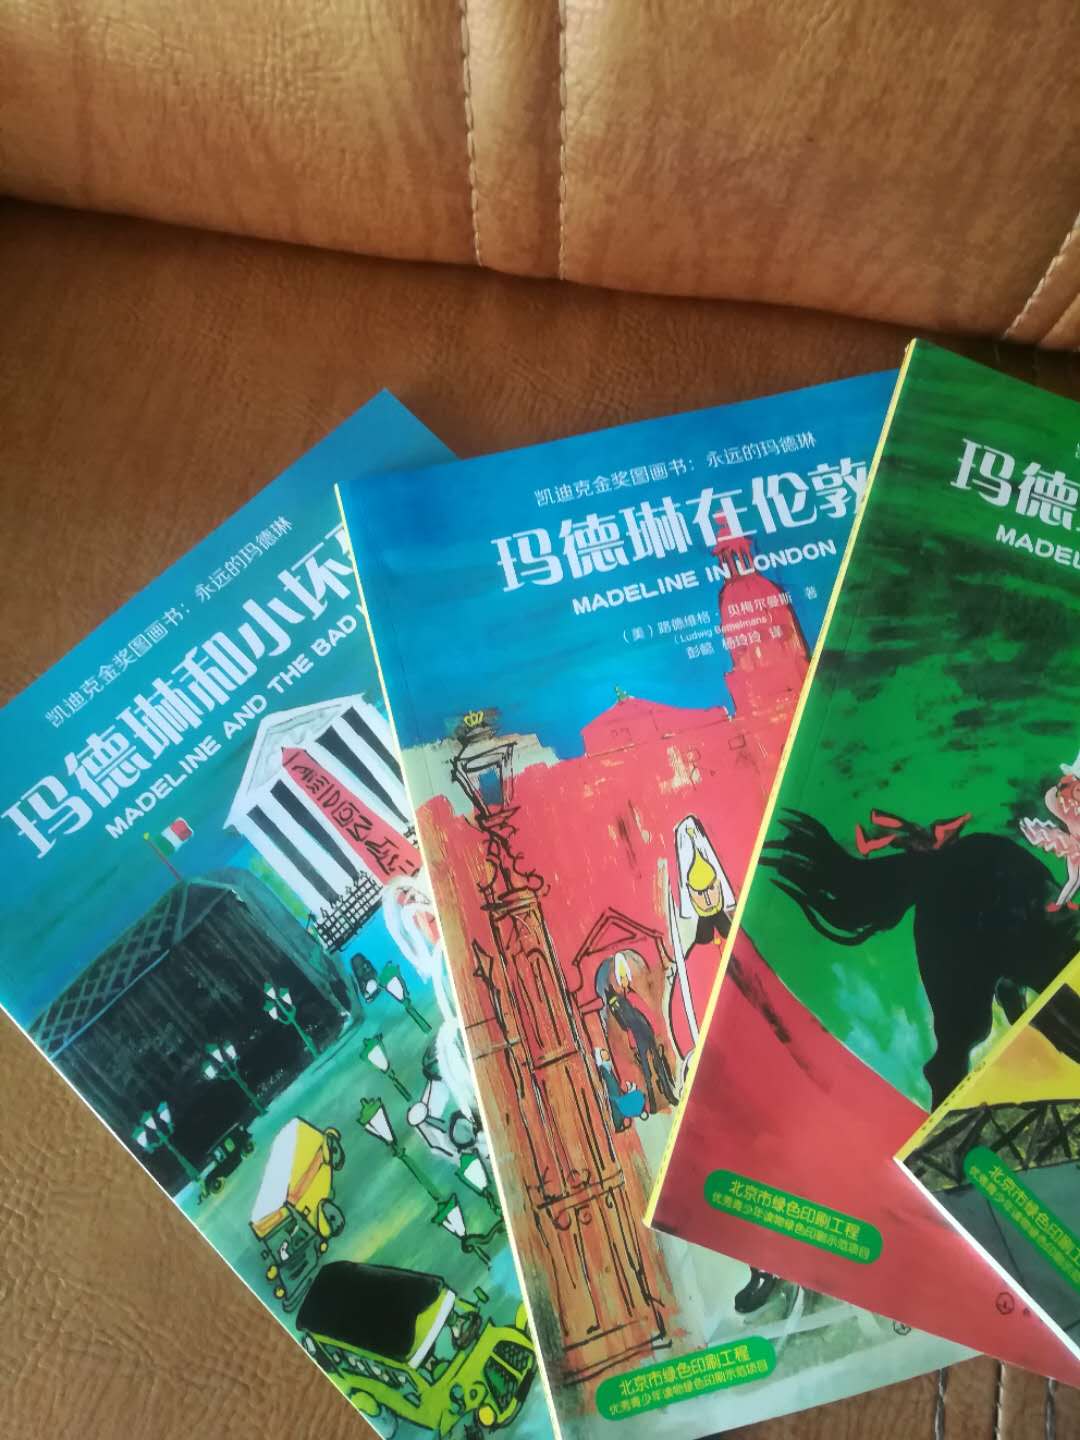 中英文对照，故事简明易懂，过段时间就能给孩子一起阅读了，很喜欢这套书。